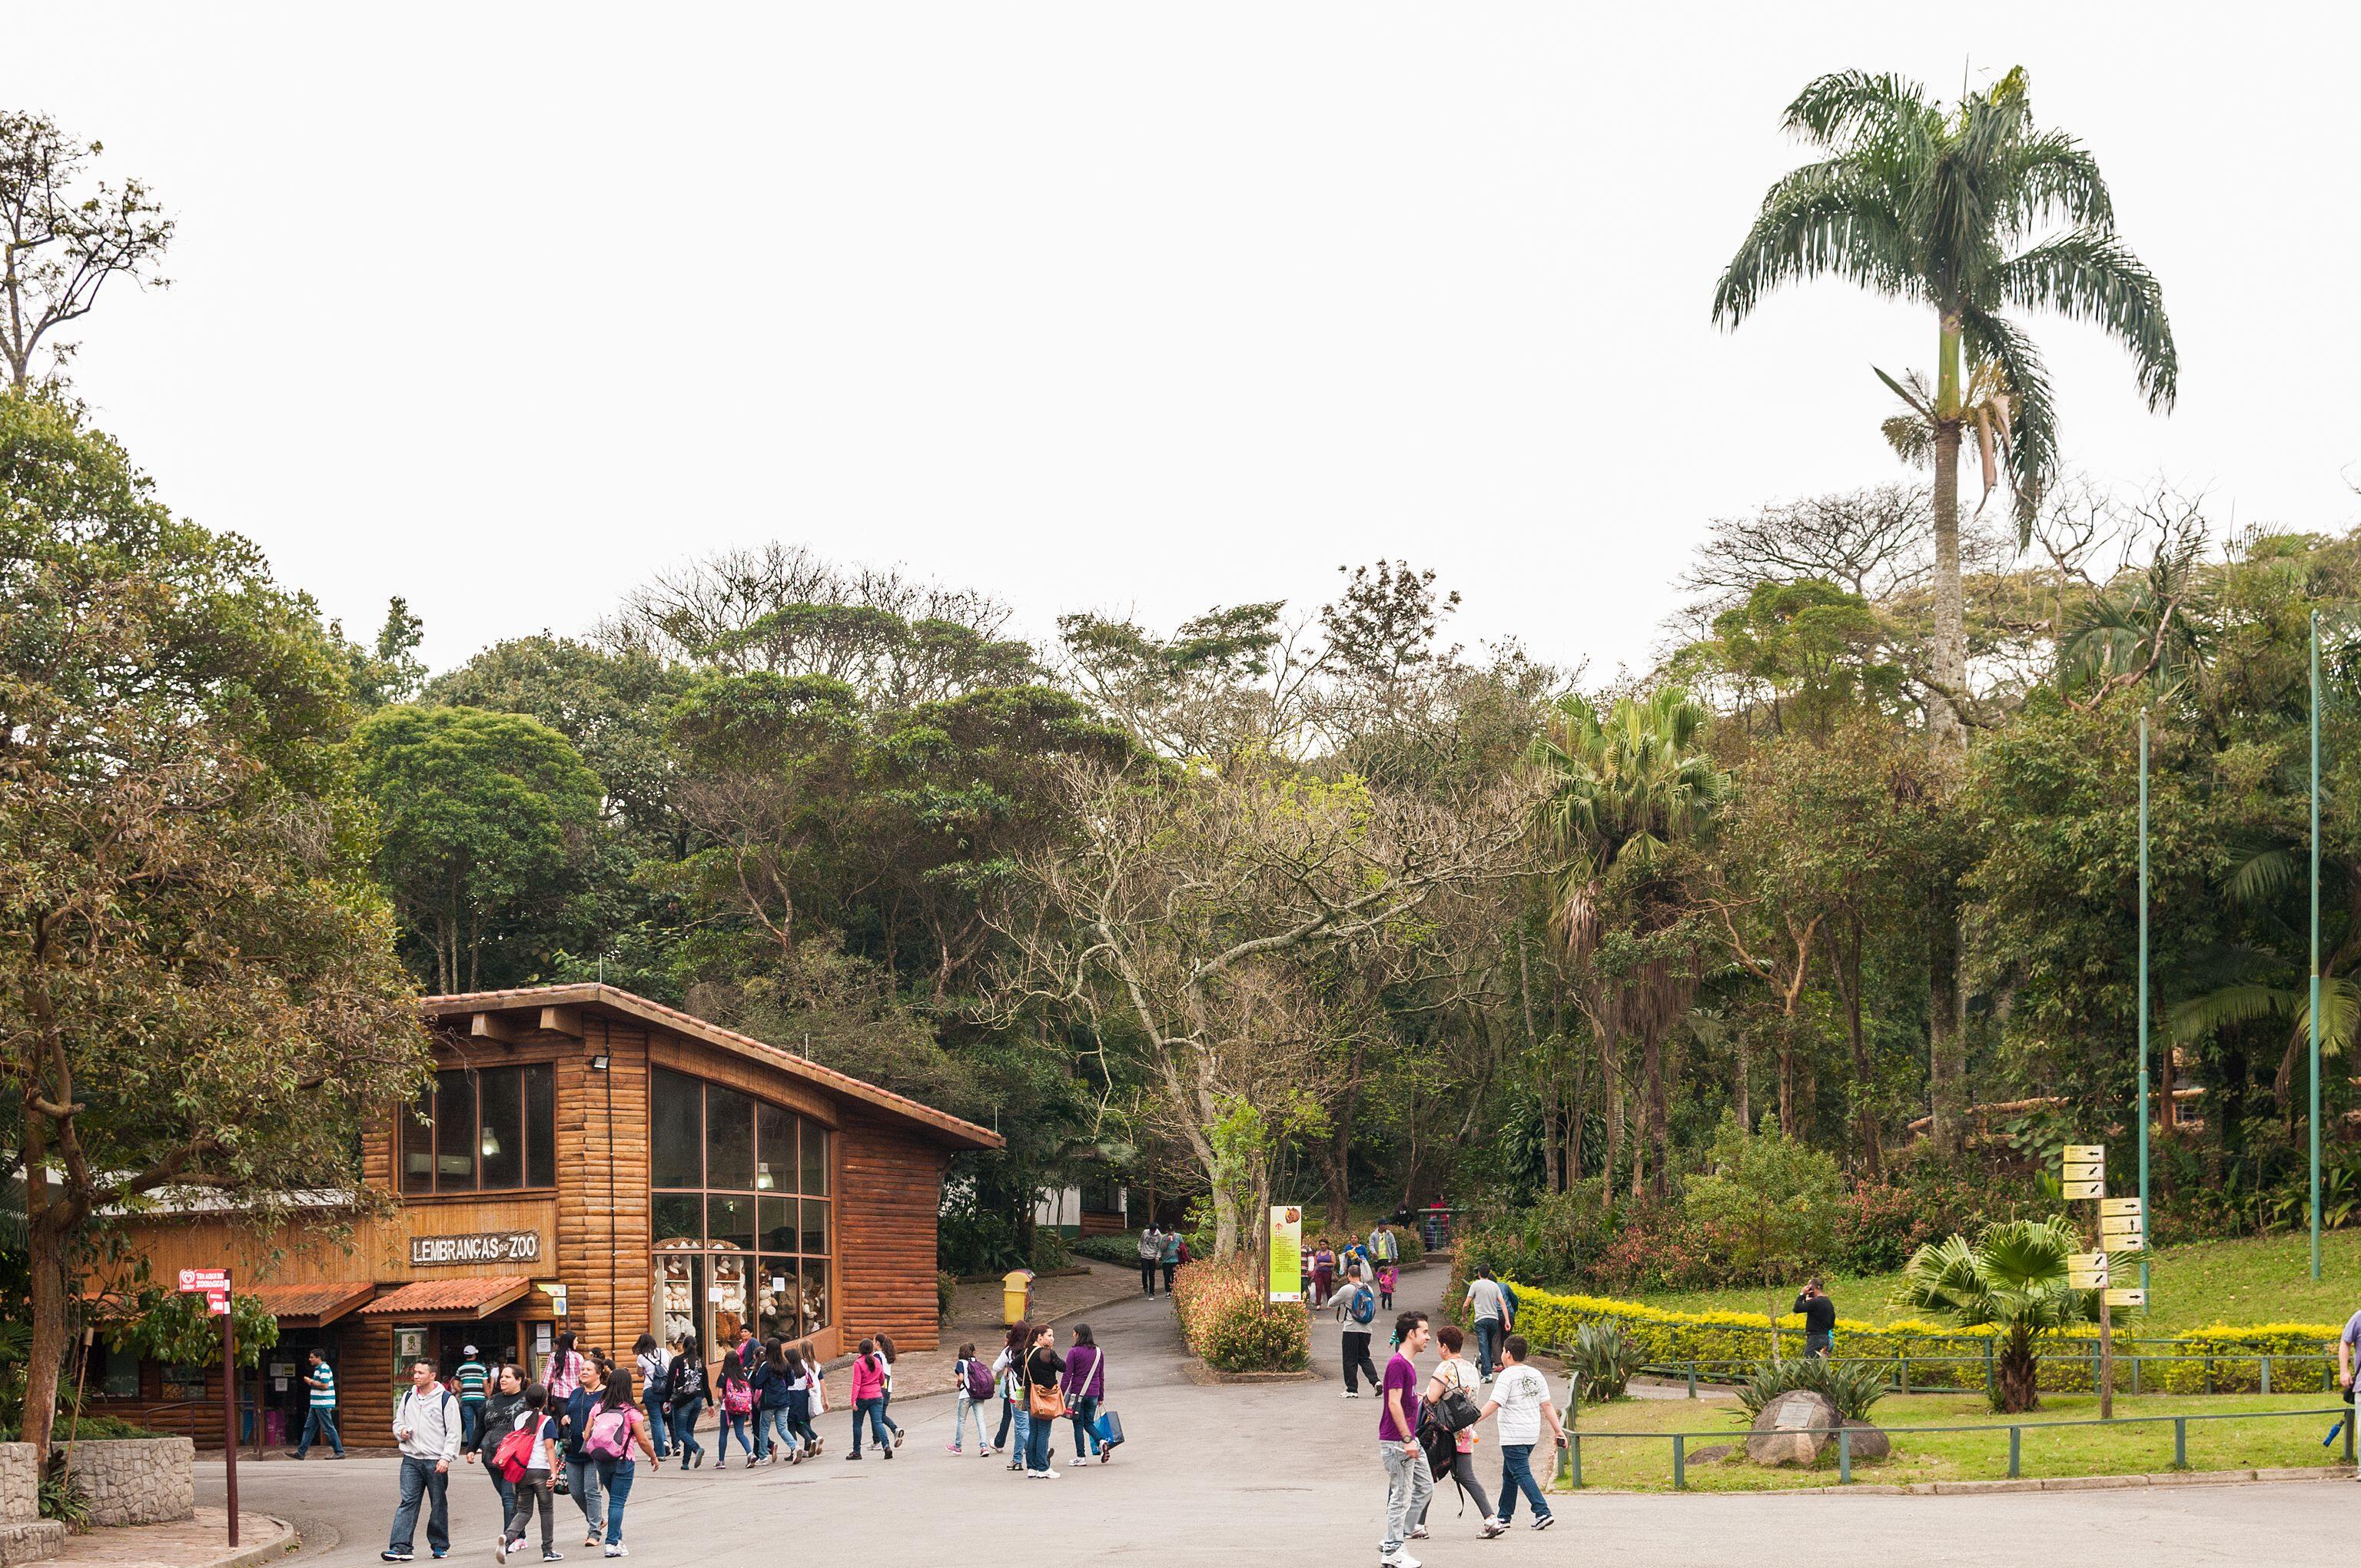 São Paulo Zoo, welcome view